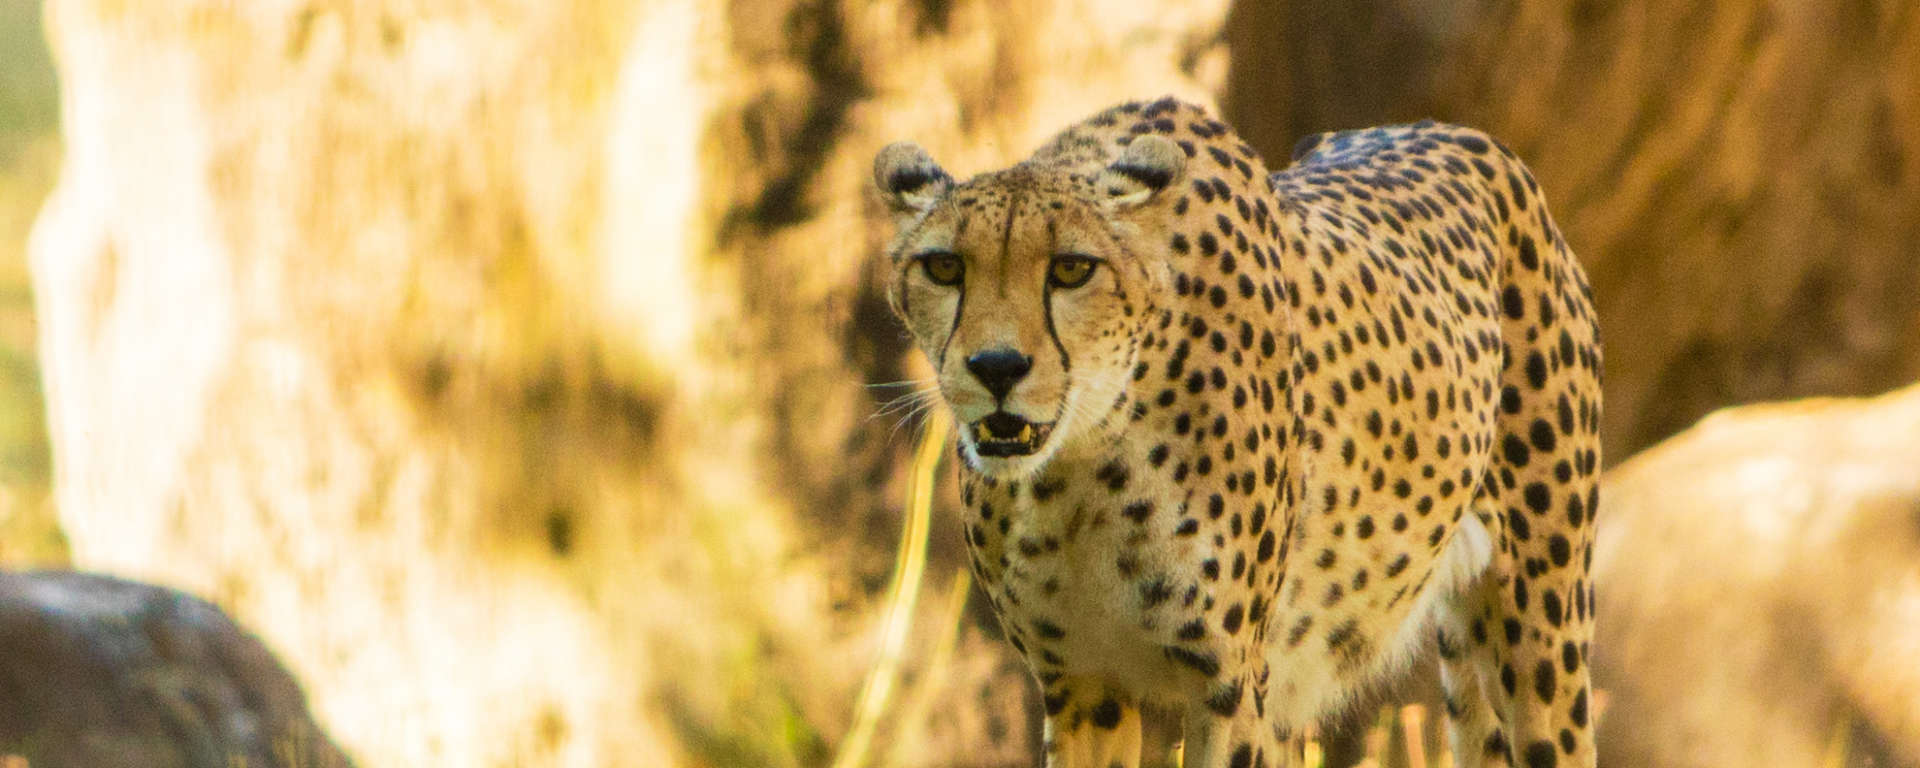 Cheetah by Ray Mabry